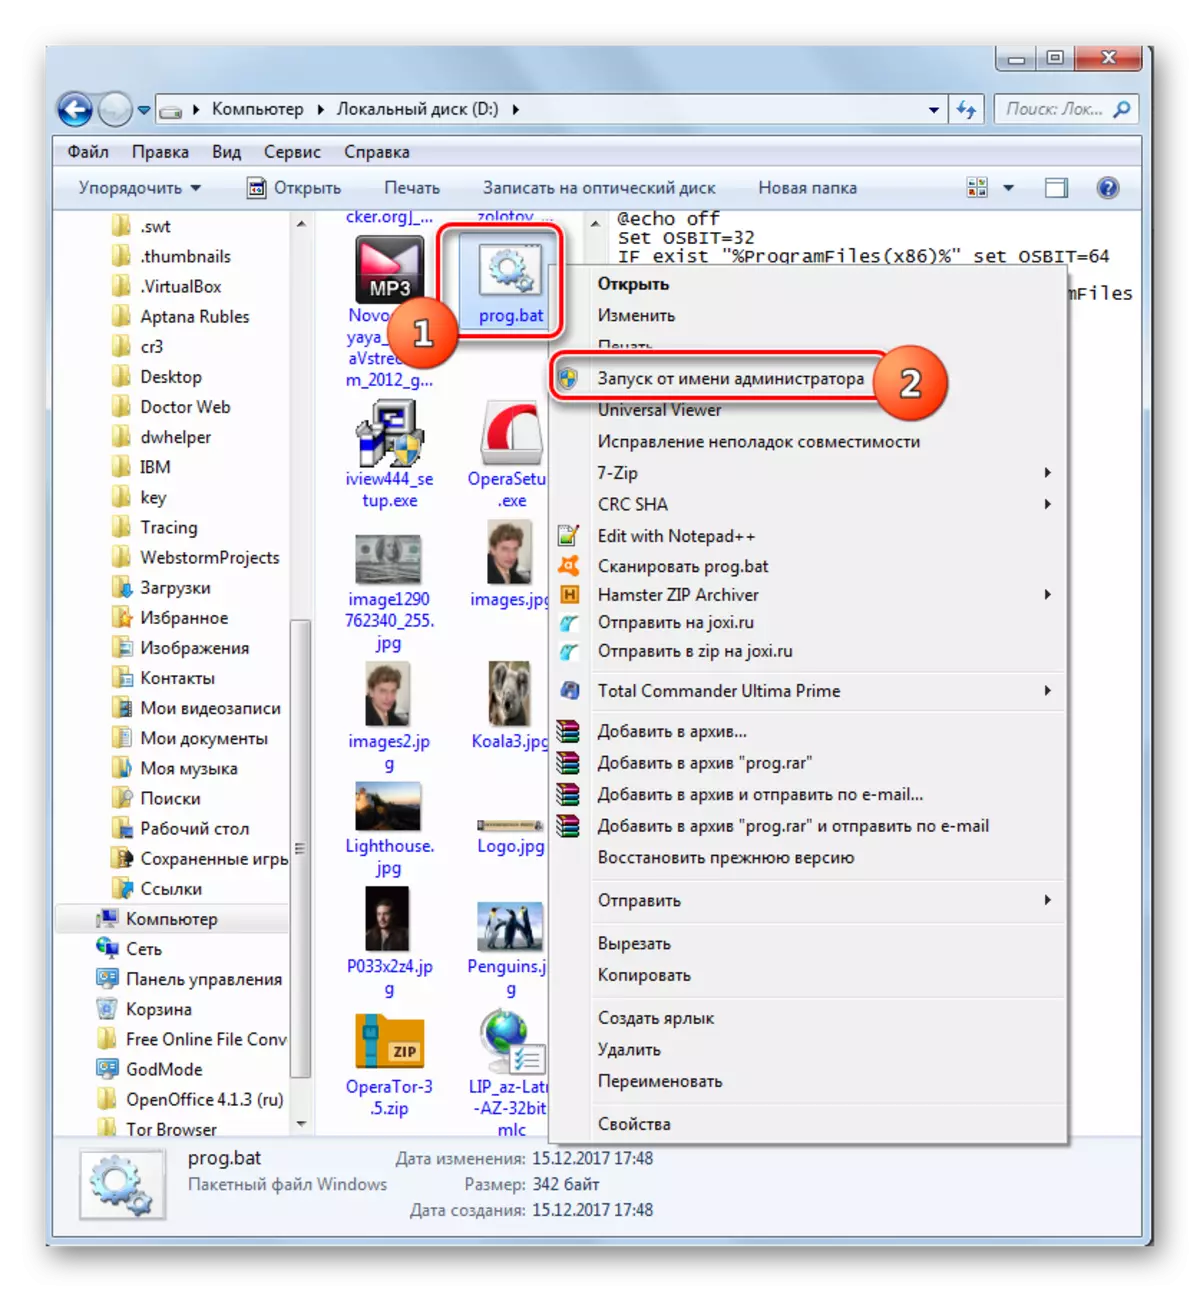 Miwiti skrip kanggo atas jenenge administrator liwat menu konteks ing panjelajah ing Windows 7